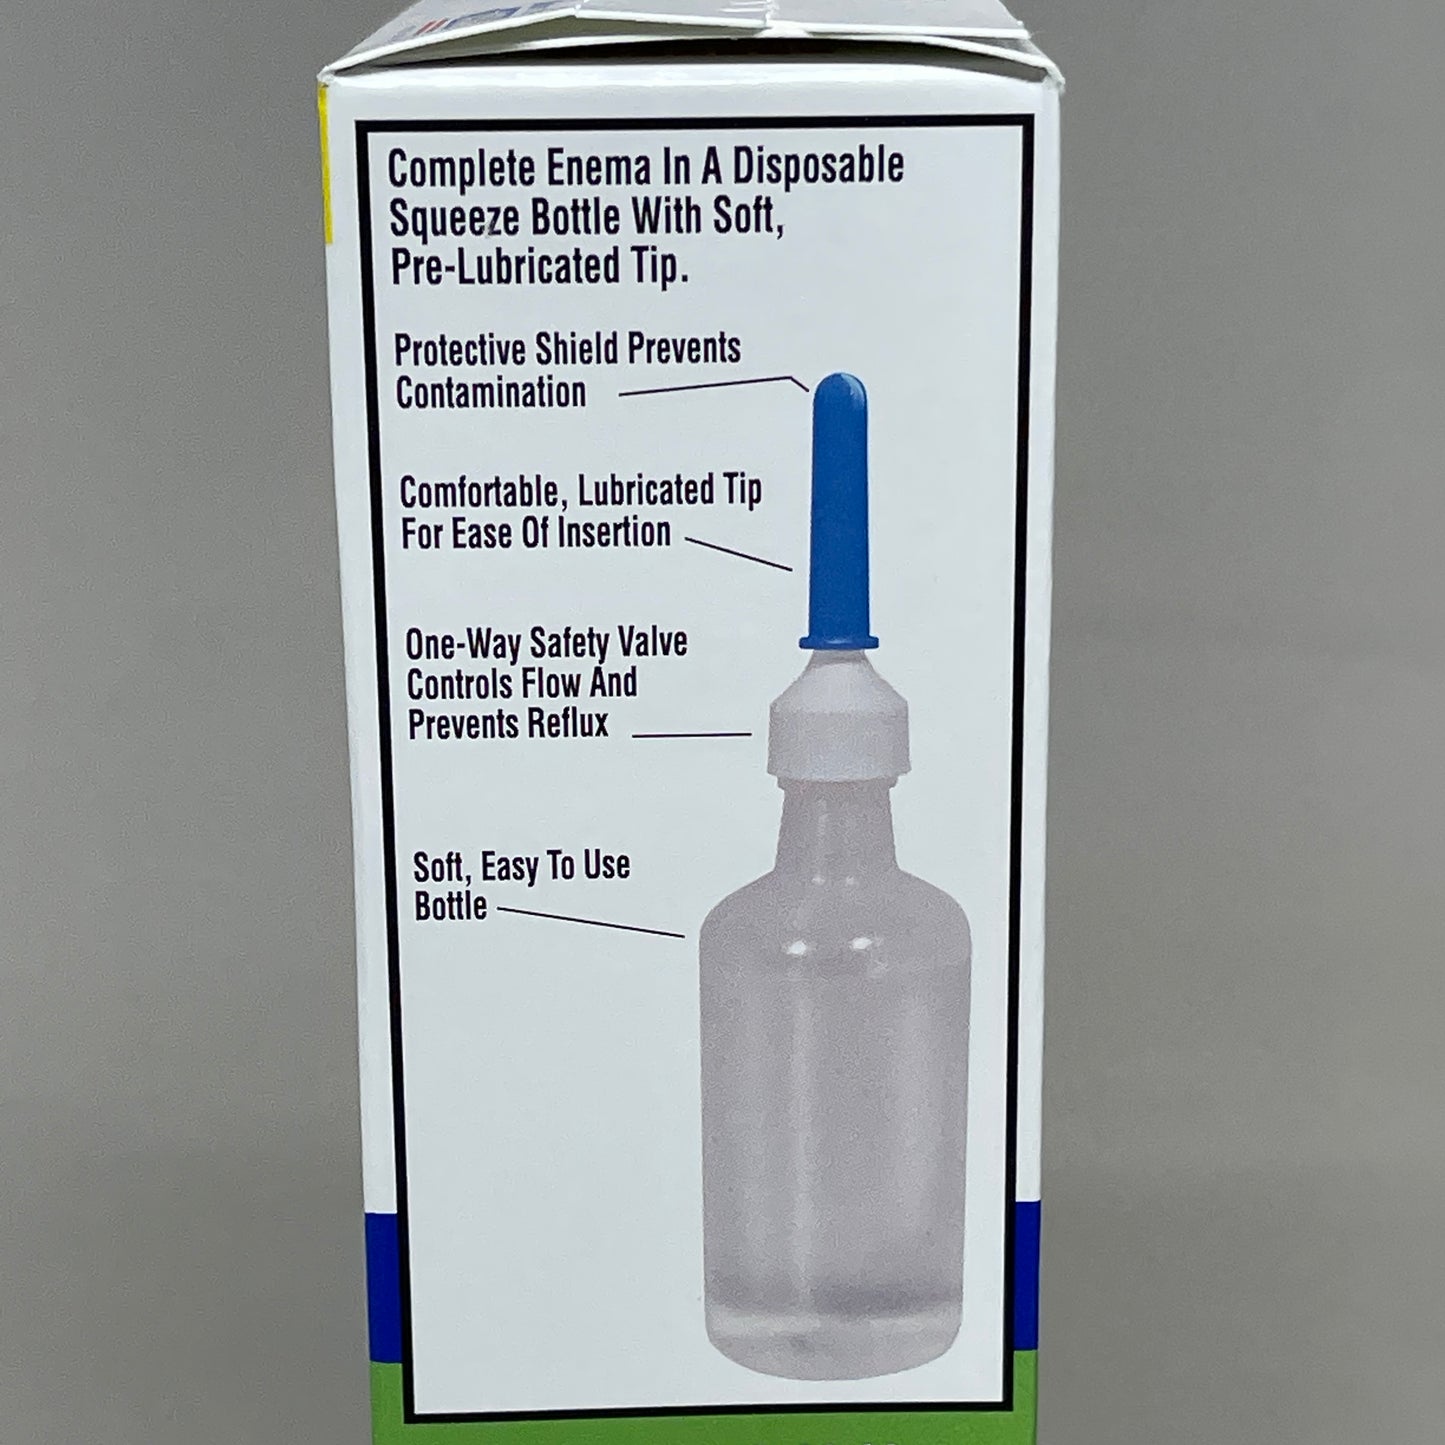 EQUATE 2-PACK Enema Sodium Phosphates Saline Laxative Bottles 4.5 fl oz 9/24 429703 (New)